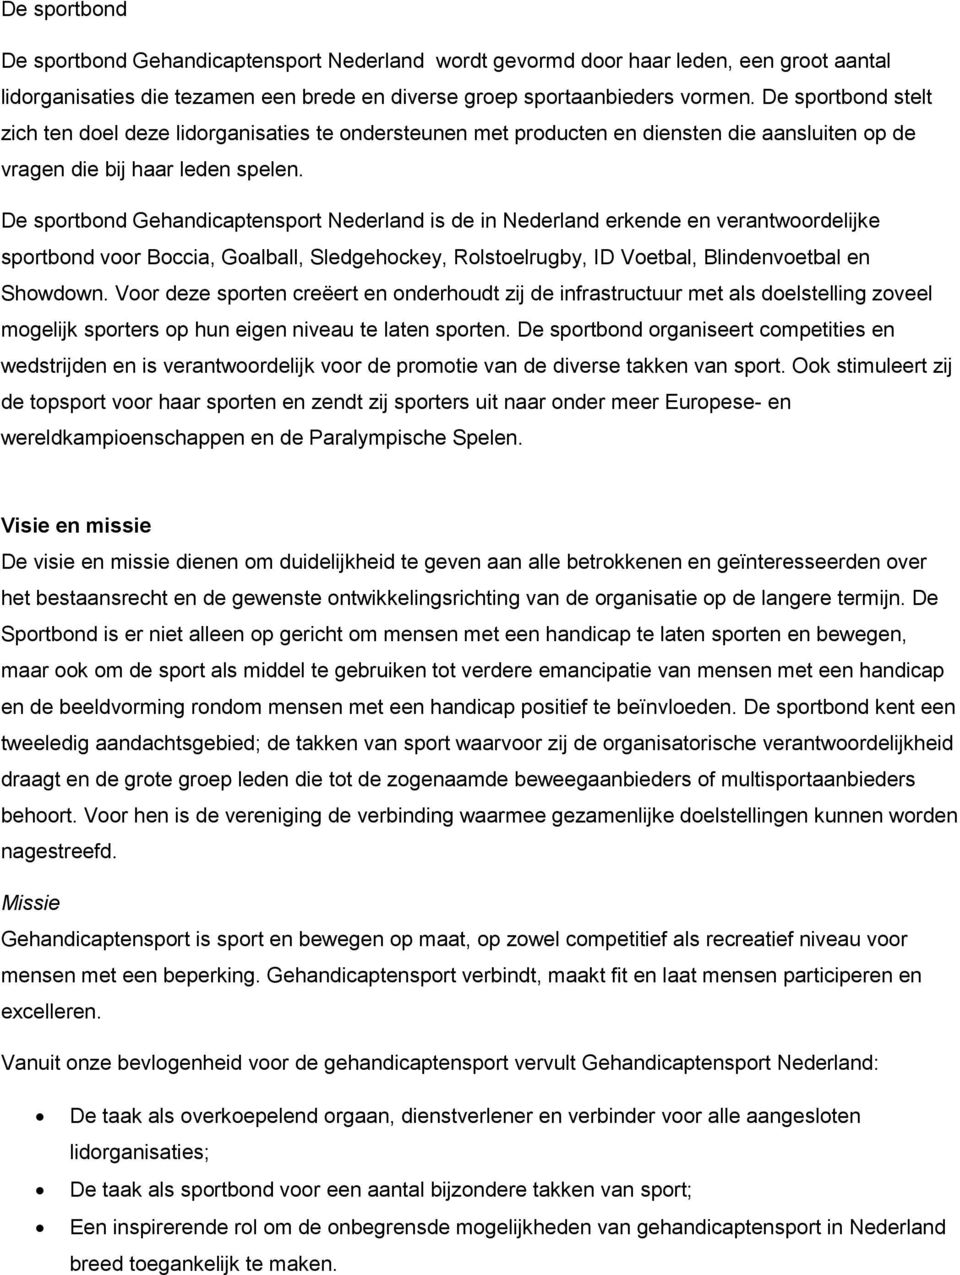 De sportbond Gehandicaptensport Nederland is de in Nederland erkende en verantwoordelijke sportbond voor Boccia, Goalball, Sledgehockey, Rolstoelrugby, ID Voetbal, Blindenvoetbal en Showdown.